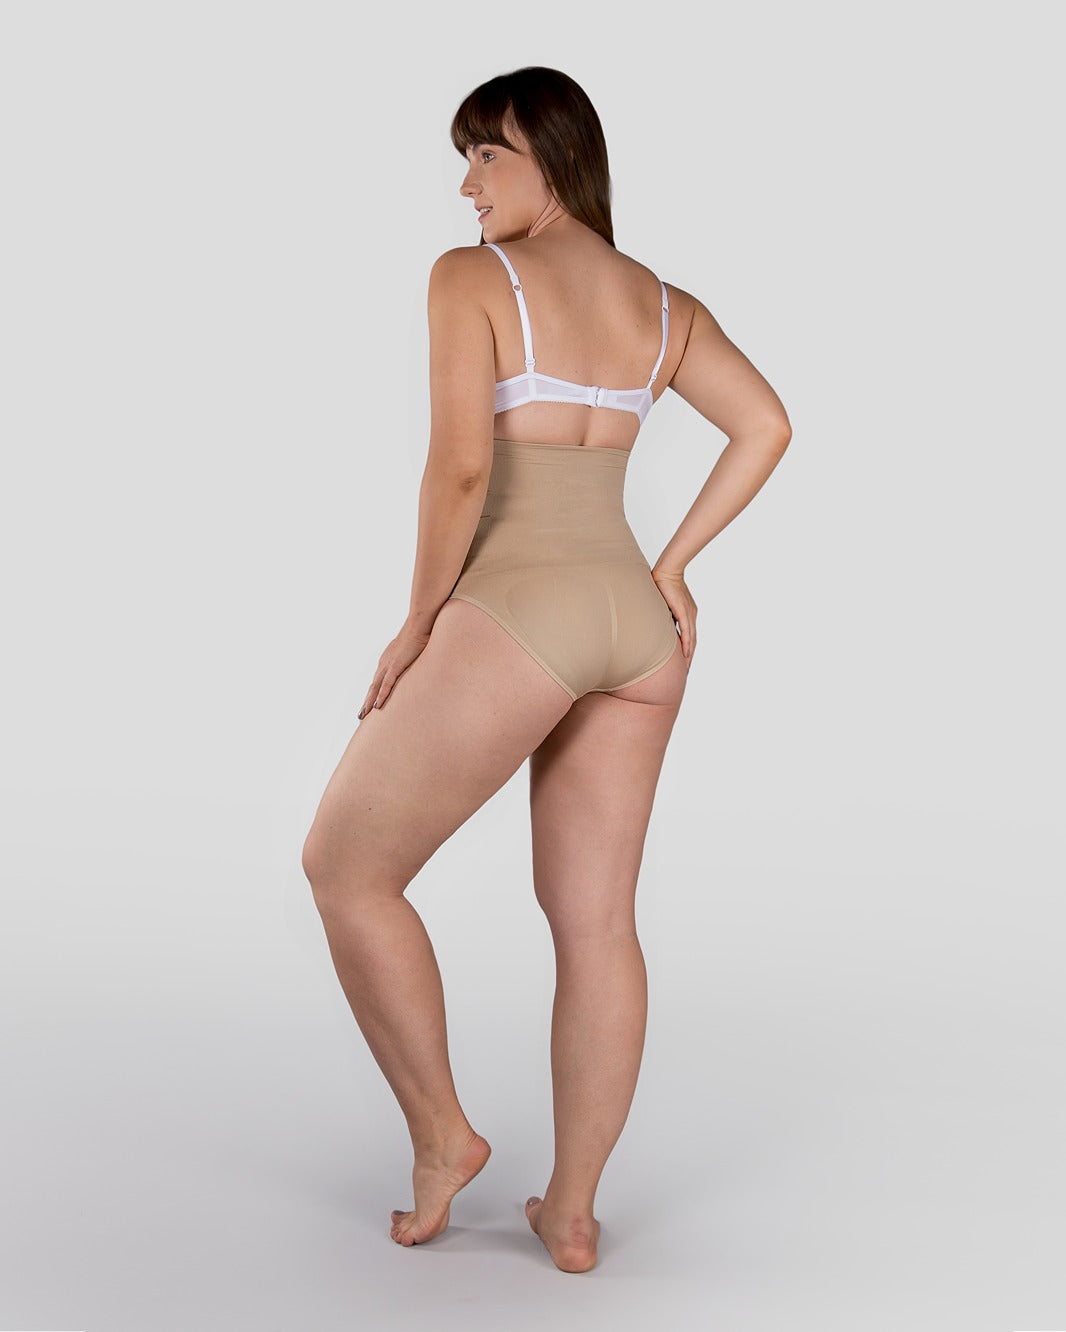 Shpwfbe Underwear Women Lace Postpartum High Waist Abdominal Shape